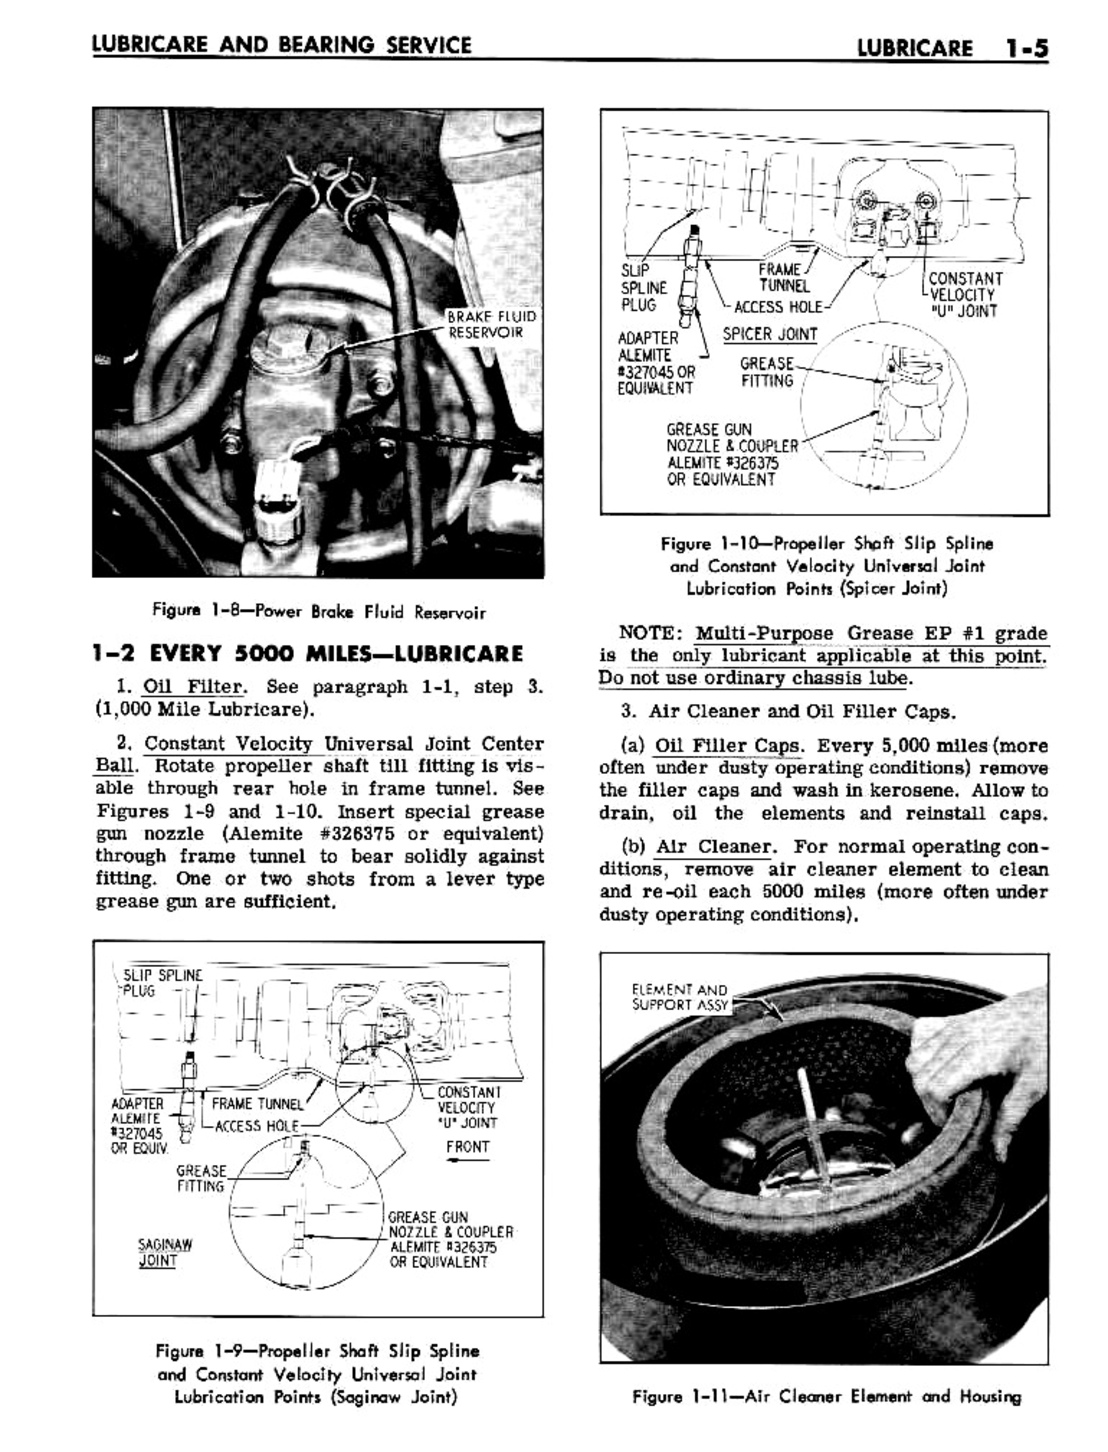 n_02 1961 Buick Shop Manual - Lubricare-005-005.jpg